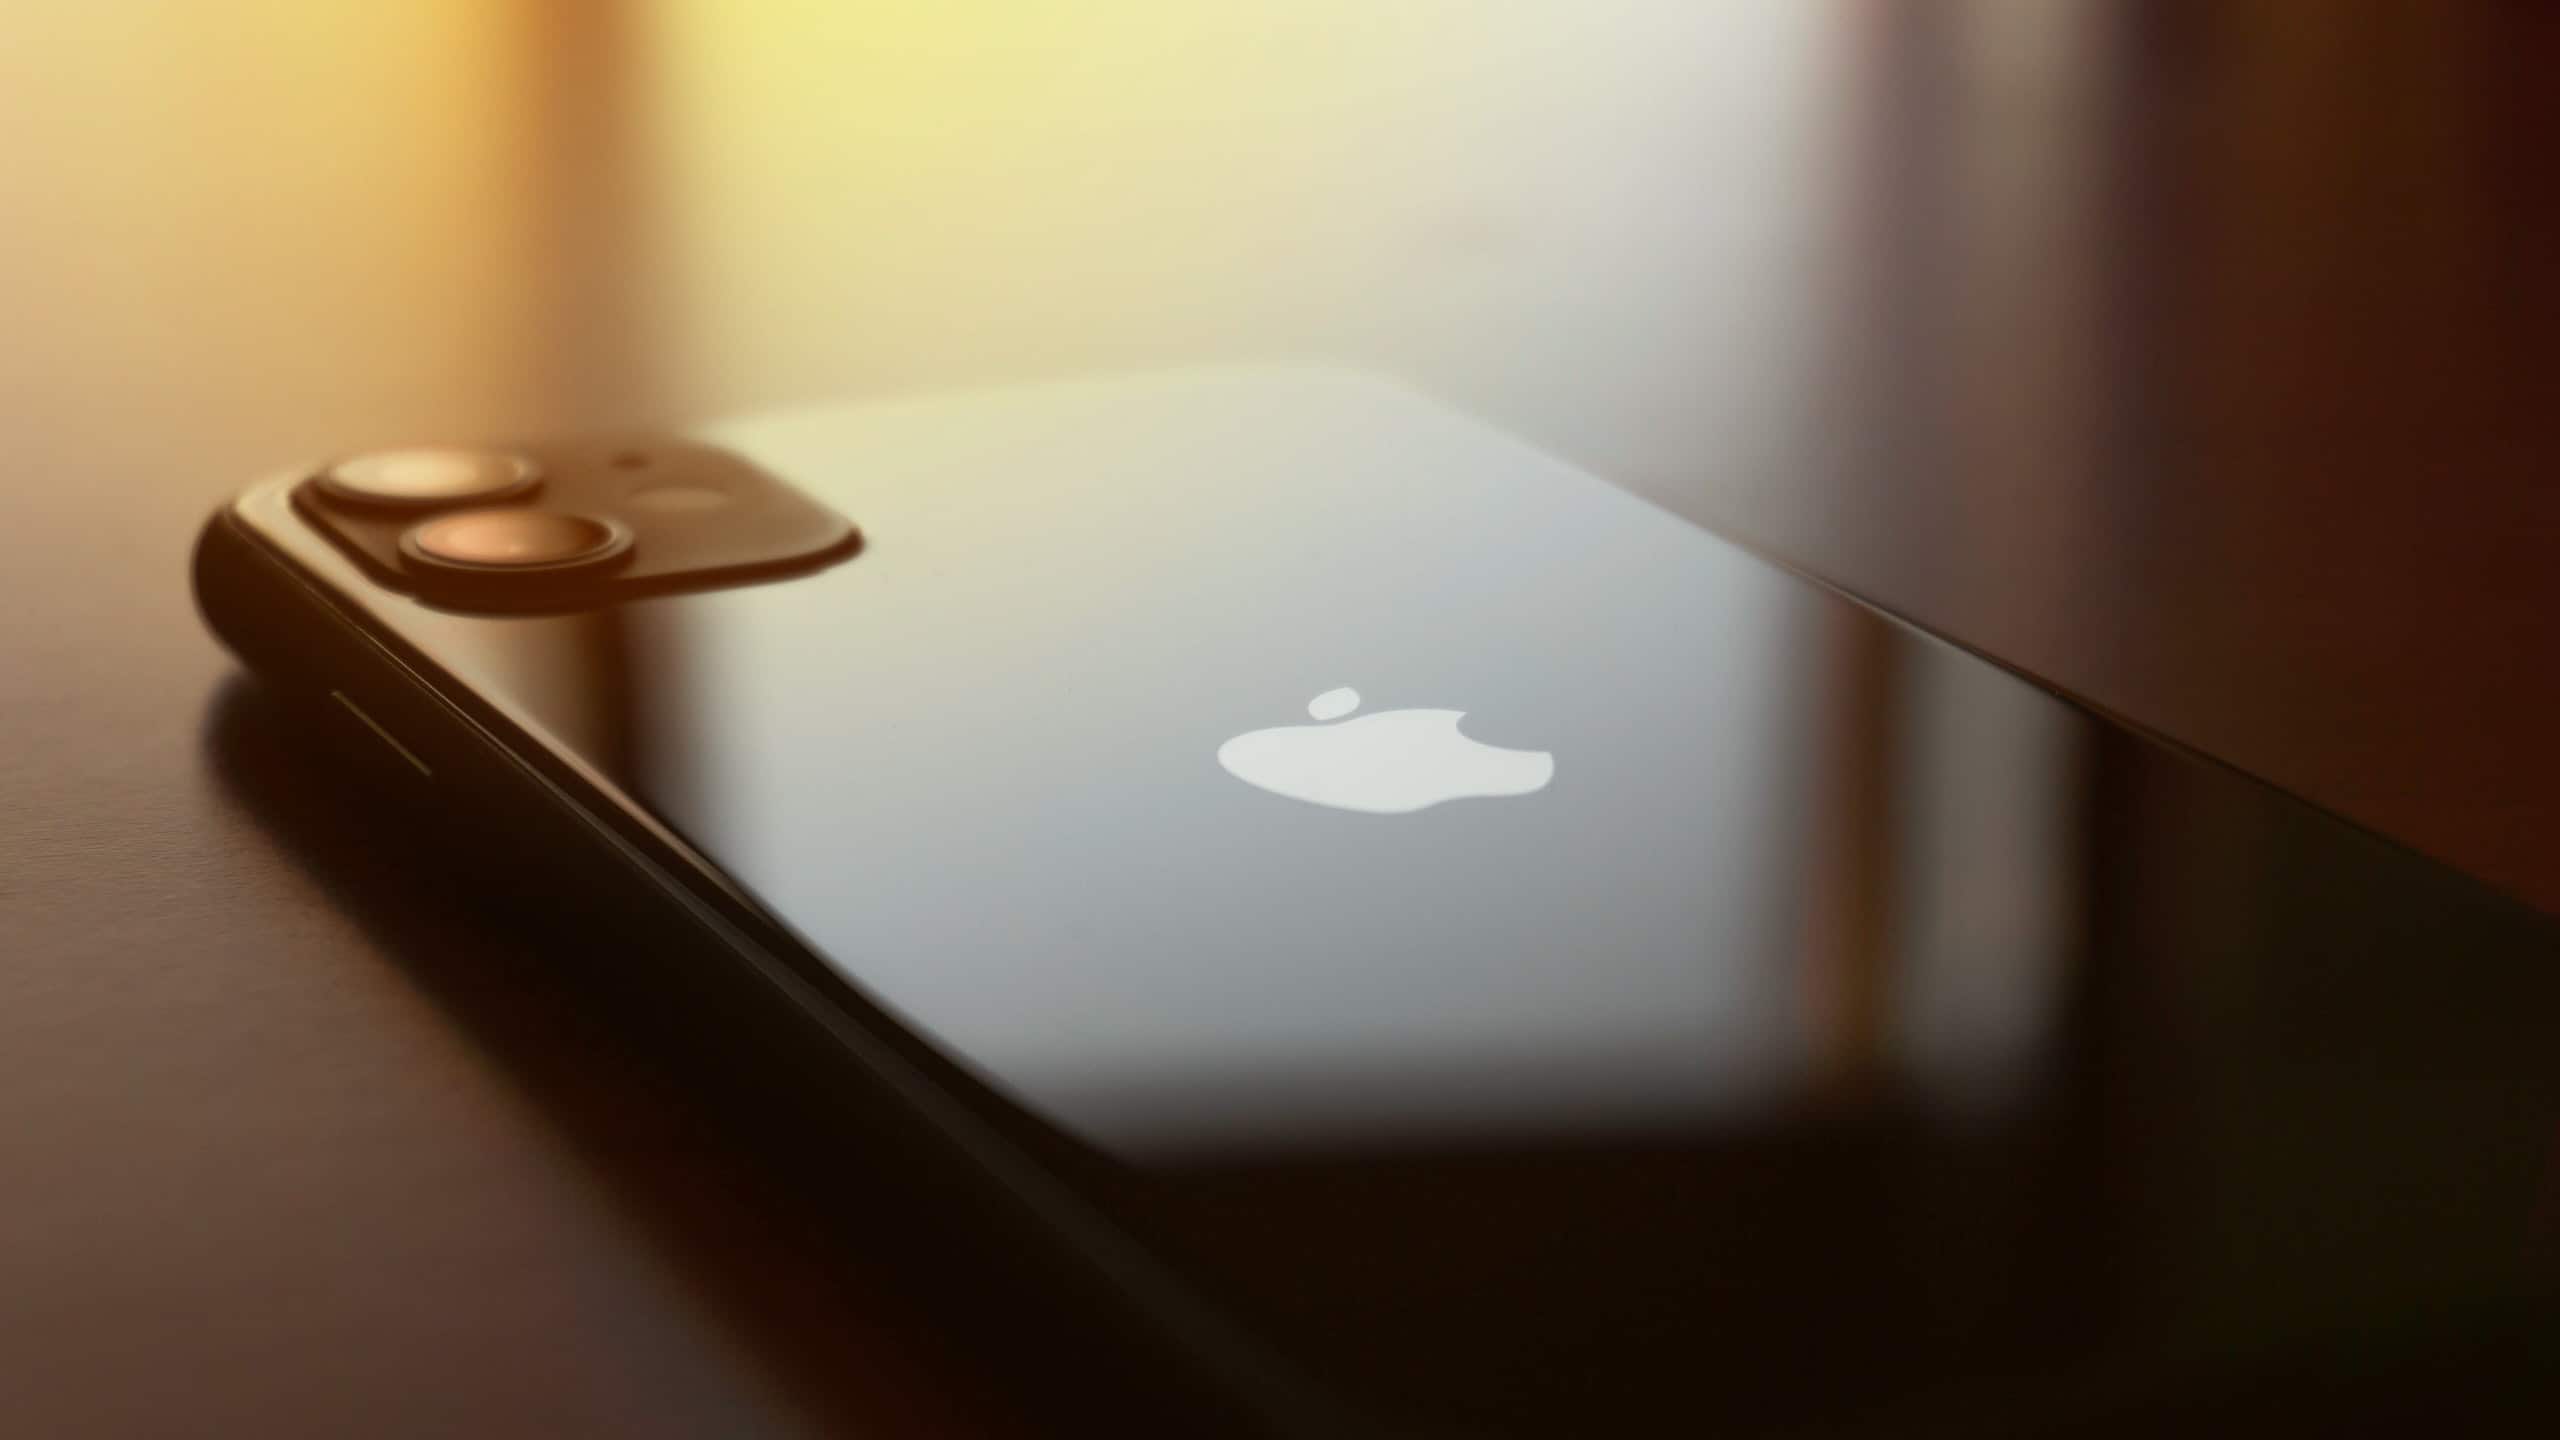 Bộ đôi iPhone 11 và iPhone SE là smartphone bán chạy nhất toàn cầu 2020